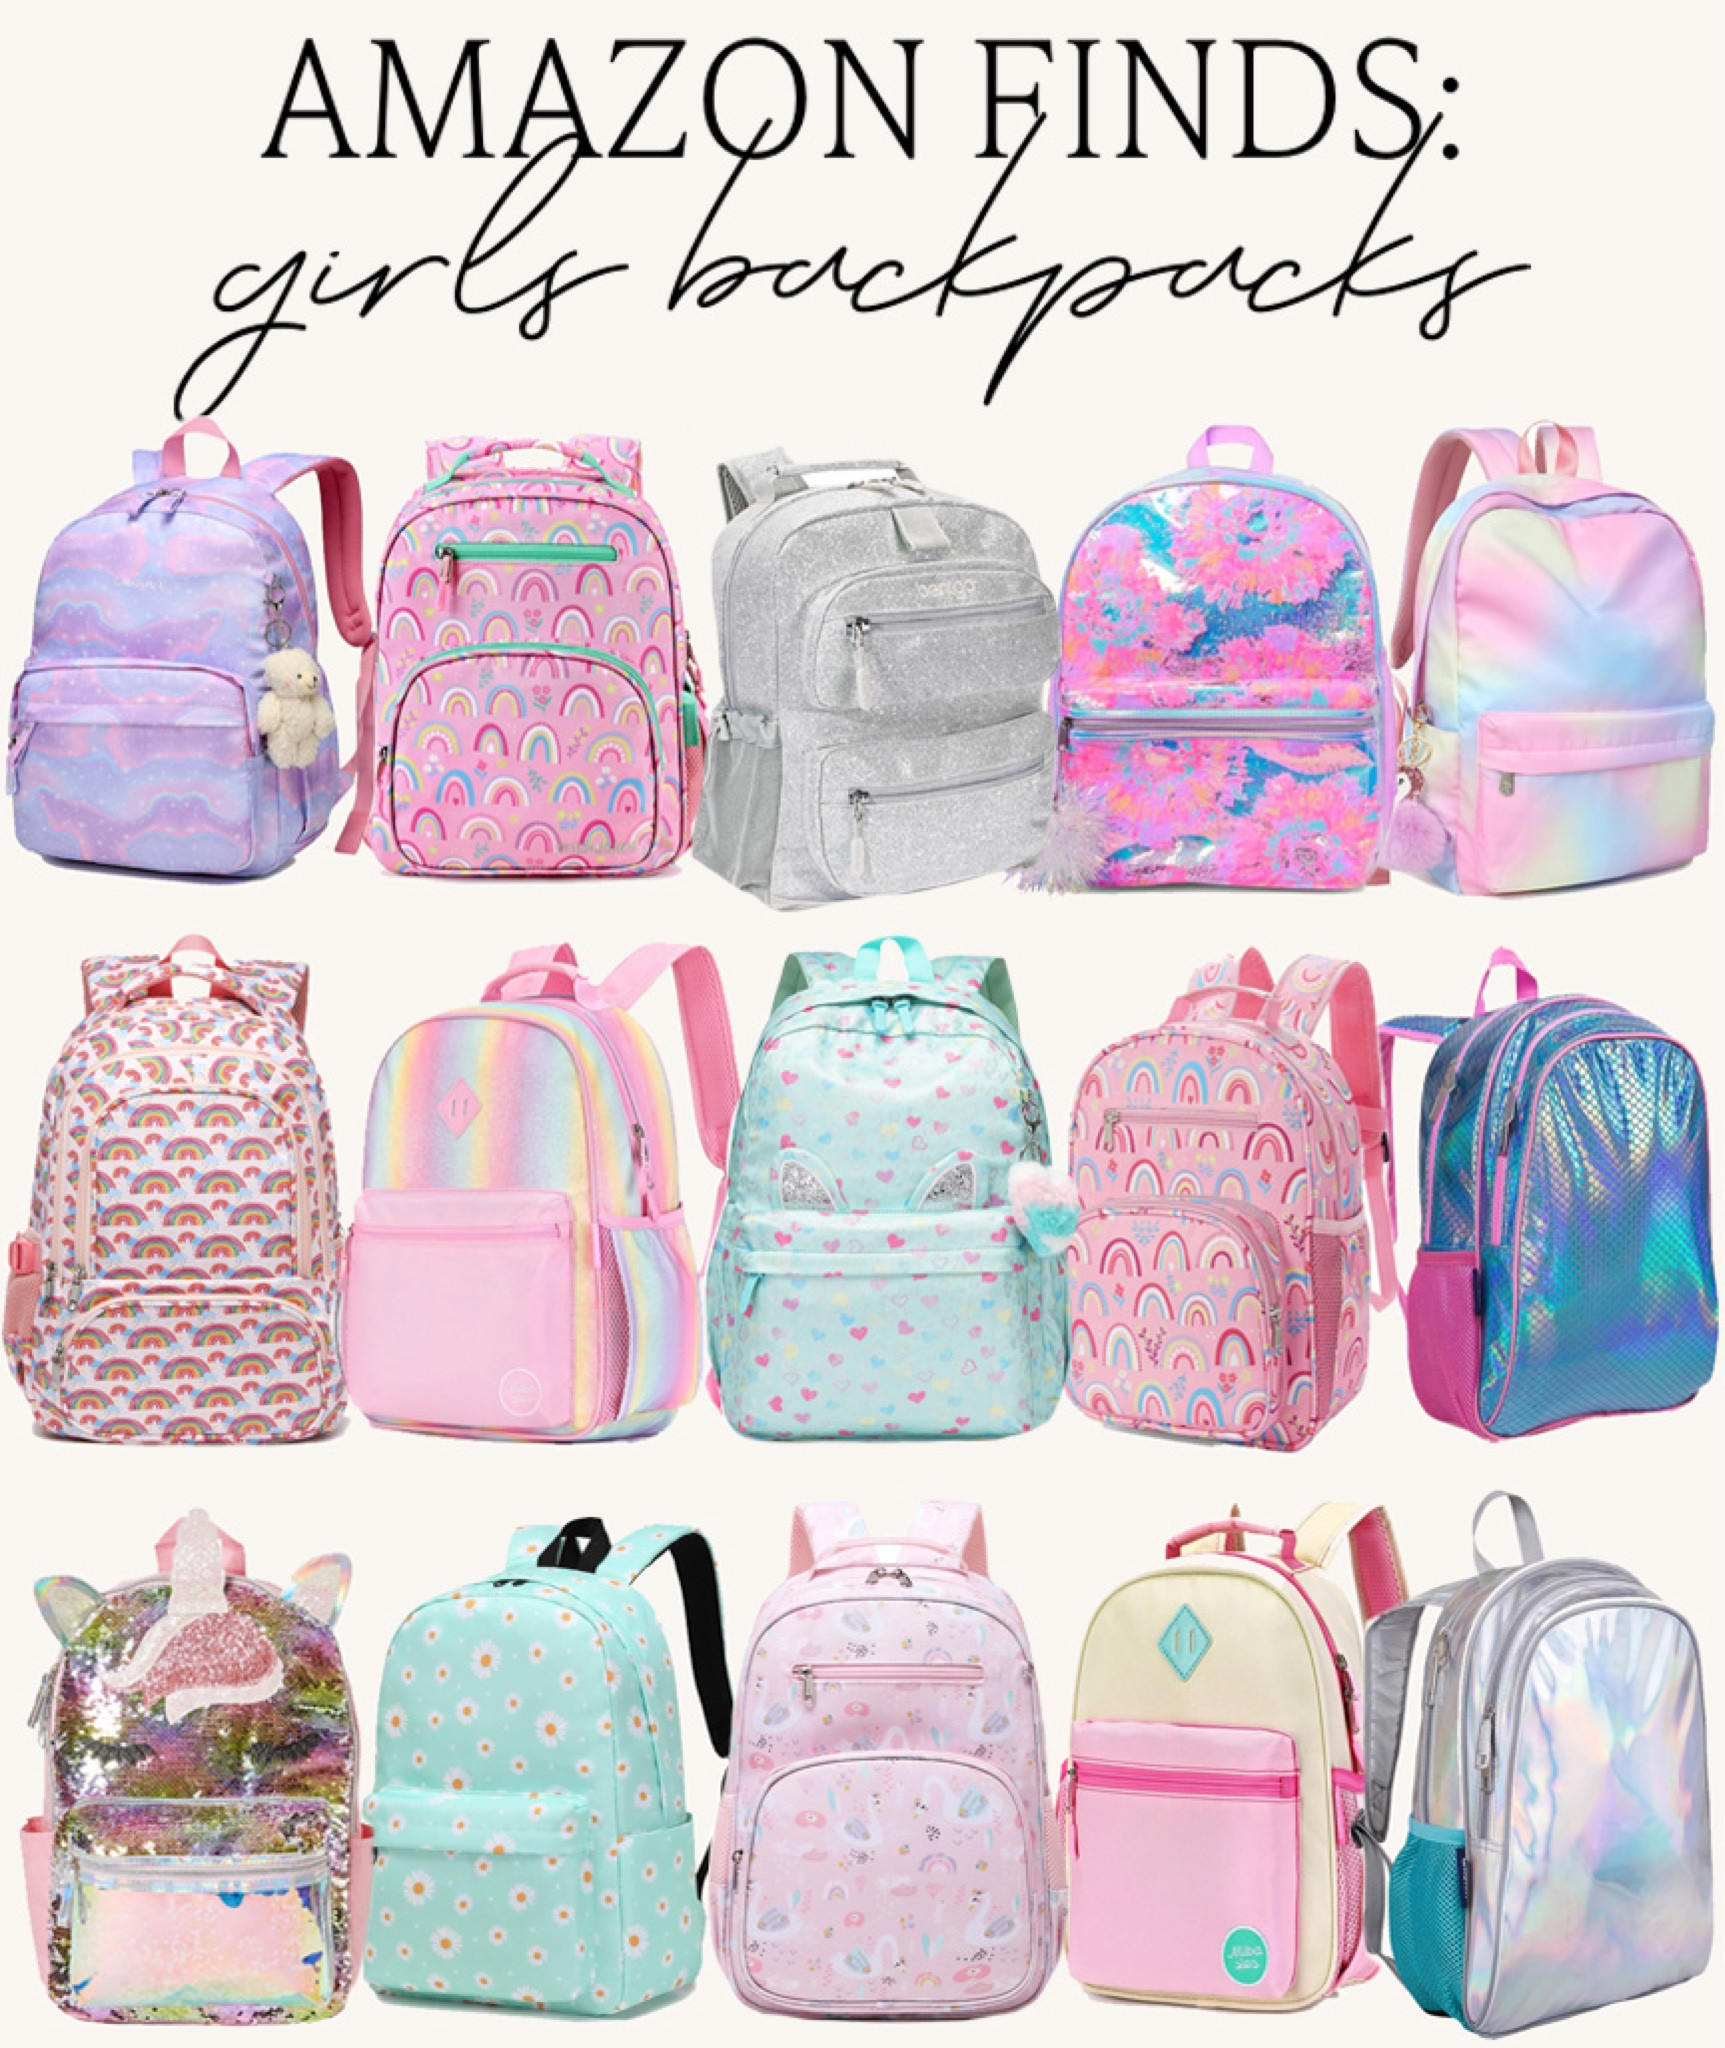 Bentgo Kids Backpack | Backpacks for School Petal Pink Glitter